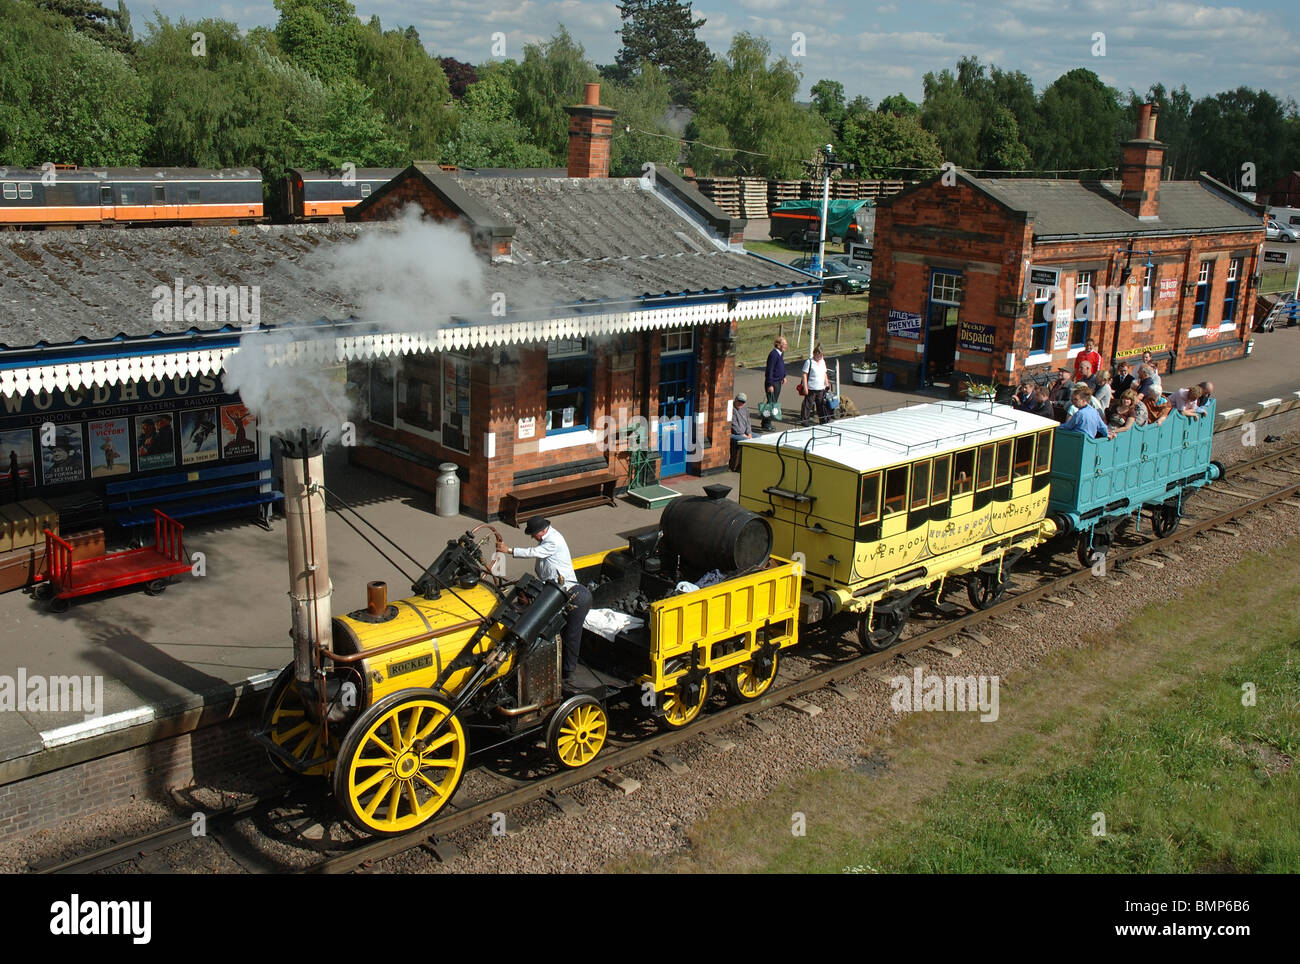 Une réplique de Stephensons Rocket locomotive à vapeur Quorn Station sur la Great Central Railway, Leicestershire, England, UK Banque D'Images